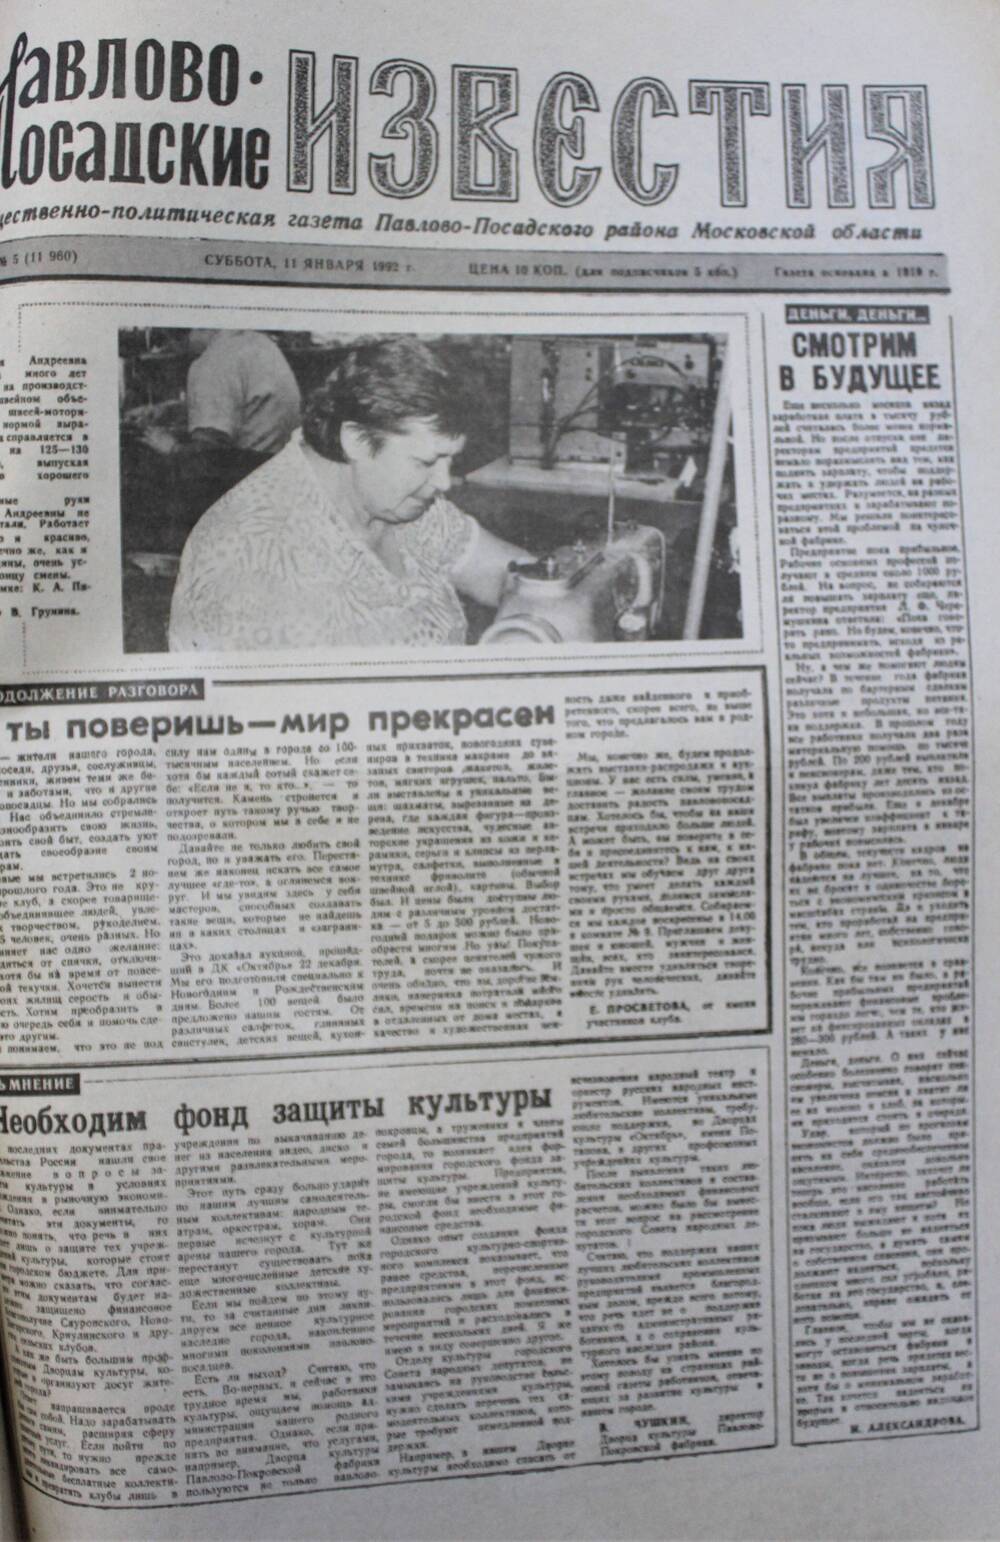 Газета Павлово-Посадские известия № 5 (11960)  от 11 января 1992 г.